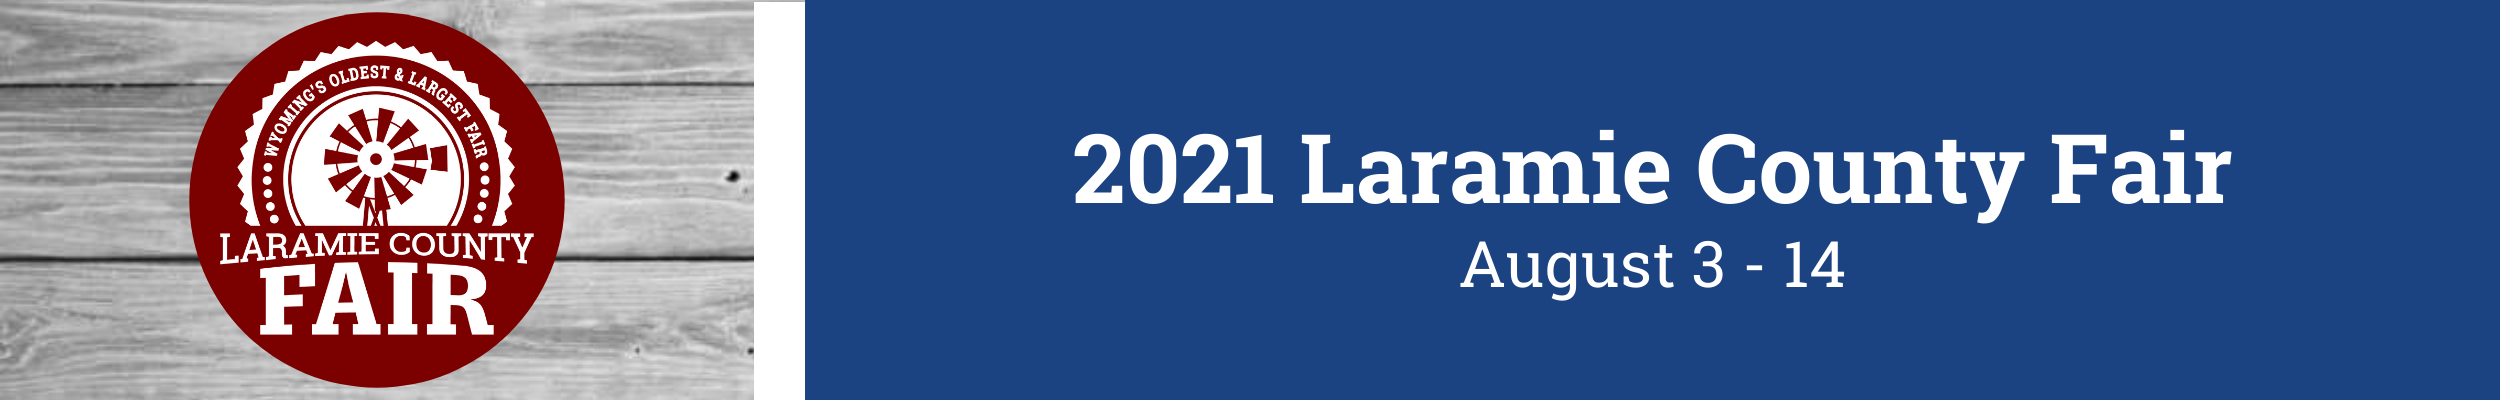 2021 Laramie County Fair